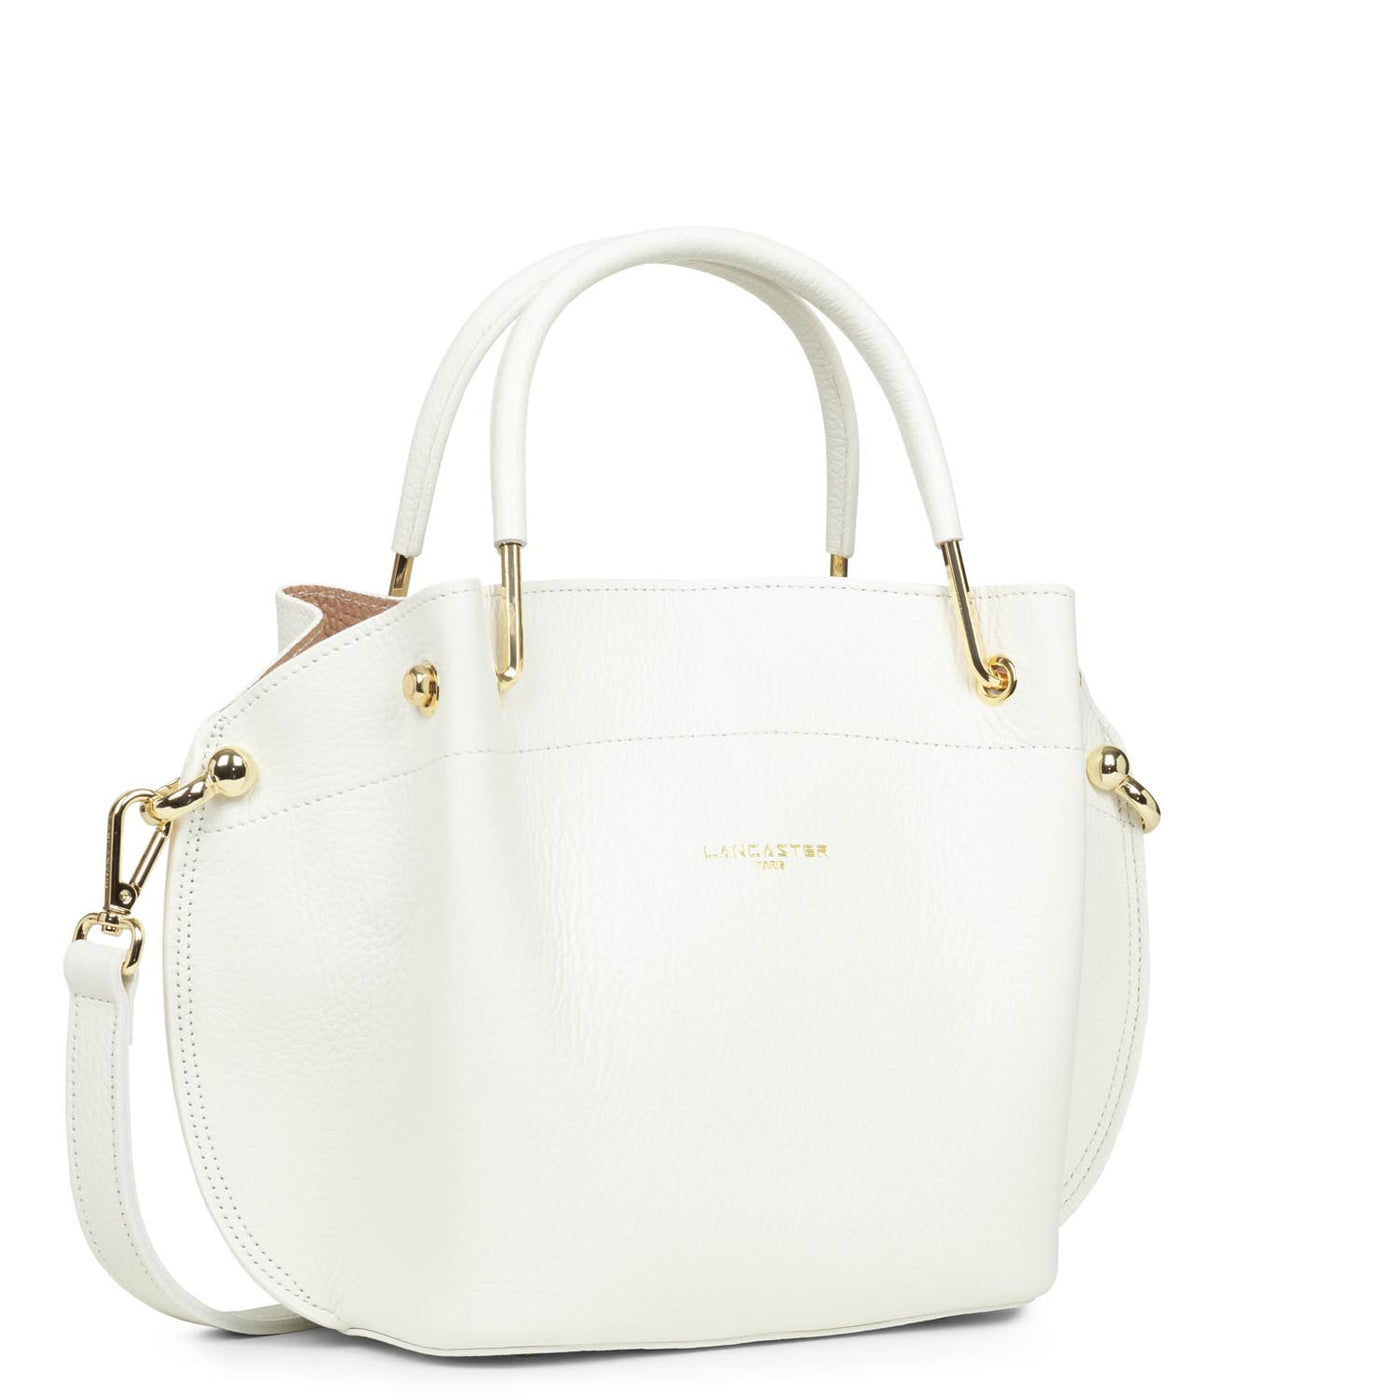 m handbag - foulonné double #couleur_blanc-cass-in-nude